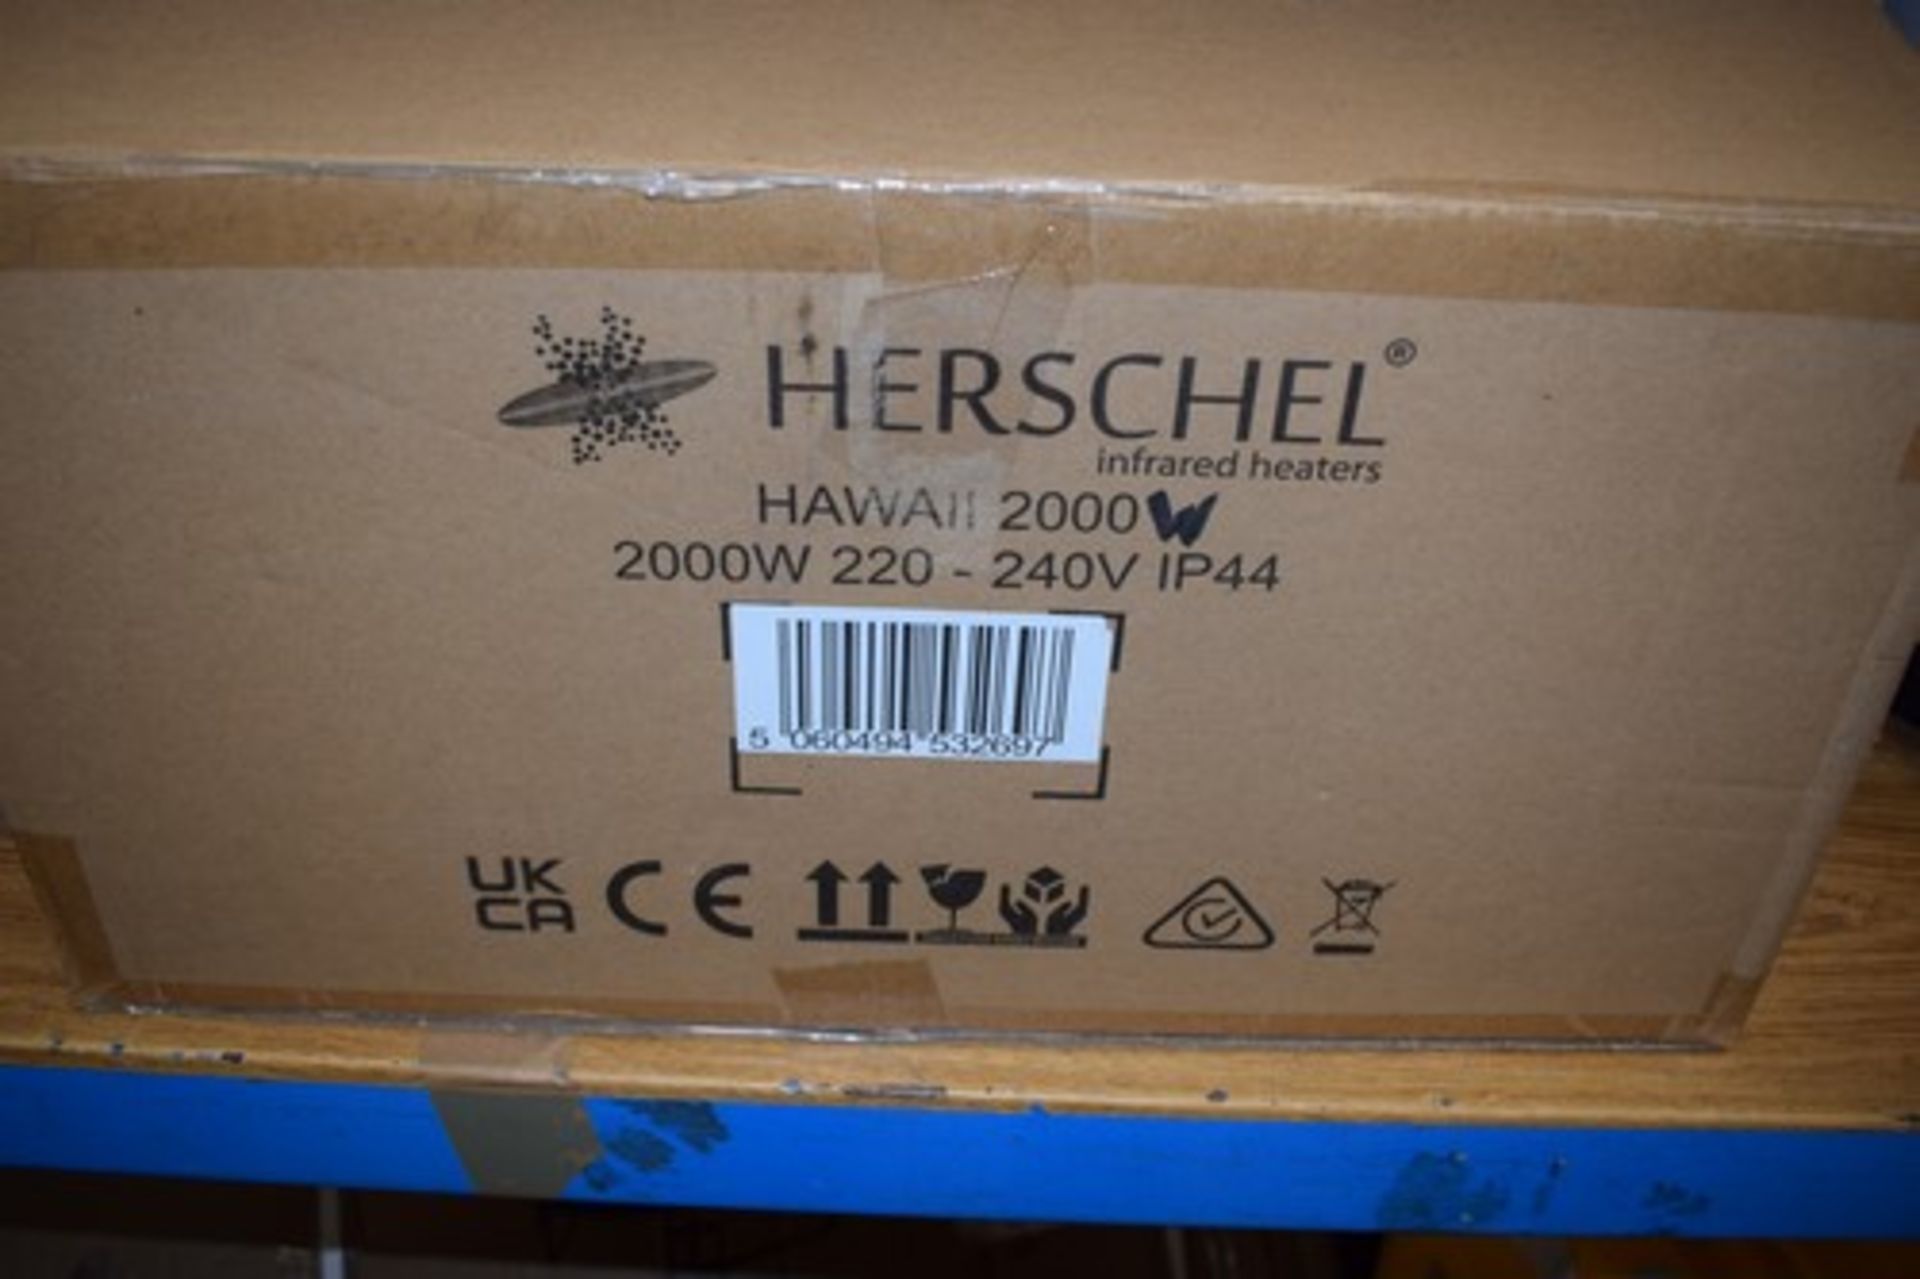 1 x Herschel Hawaii 2kw warm glow infrared heater, EAN: 5060494532697 - new in box (ES16)